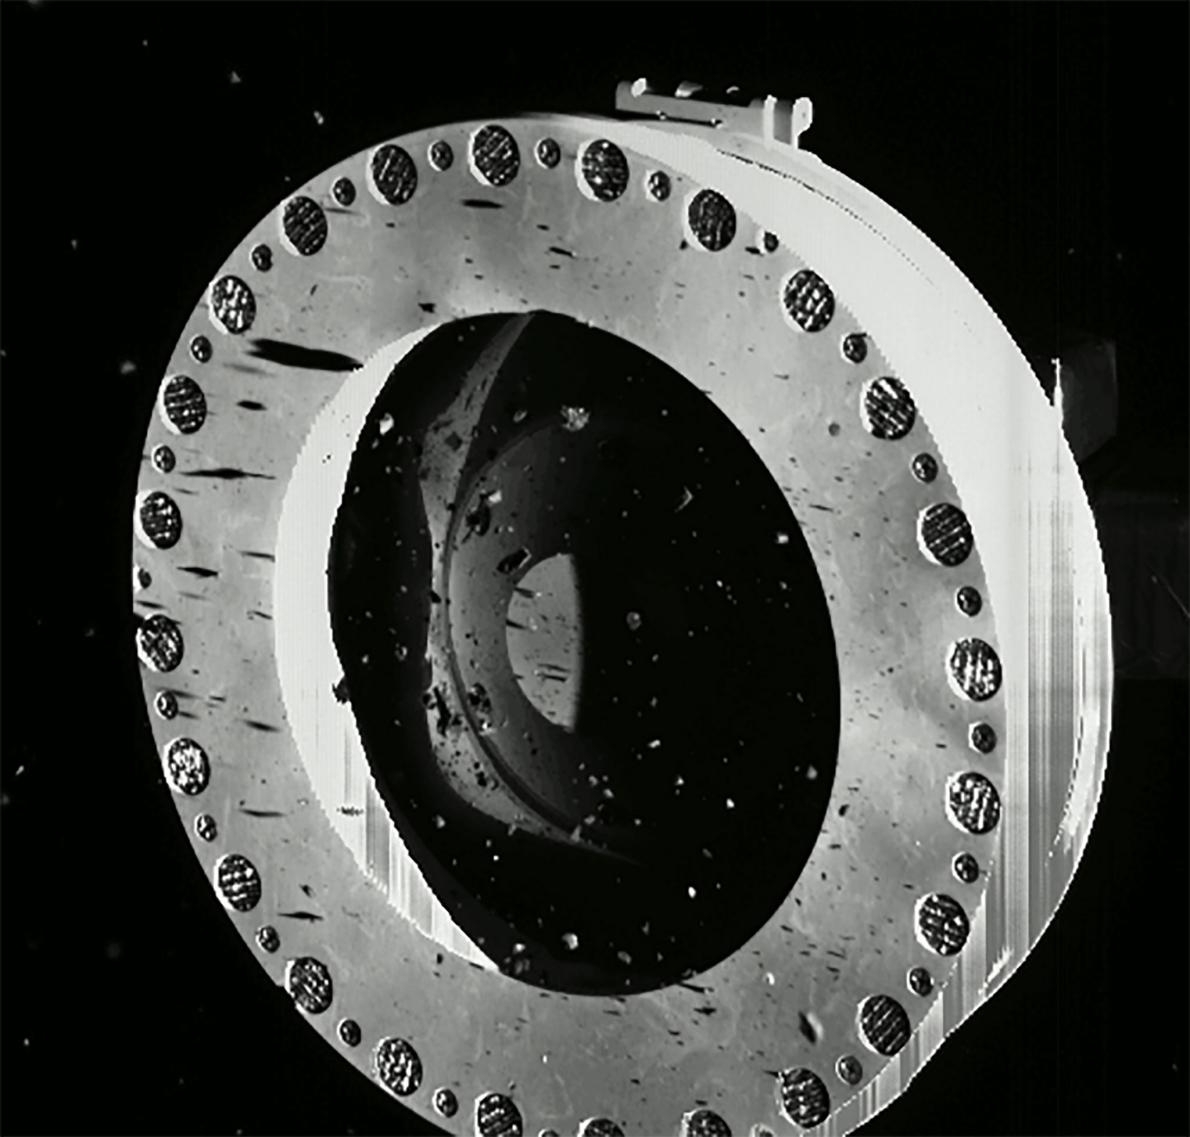 10月22日，在著陸貝努的兩天後，工程師發現歐西里斯號的一觸即走樣本採集裝置採樣頭正在洩漏寶貴的岩石和灰塵。罪魁禍首是因為較大的石塊卡住原本應該要將樣本擋在採樣頭內的聚酯膠膜擋板。PHOTOGRAPH BY NASA/GODDARD/UNIVERSITY OF ARIZONA